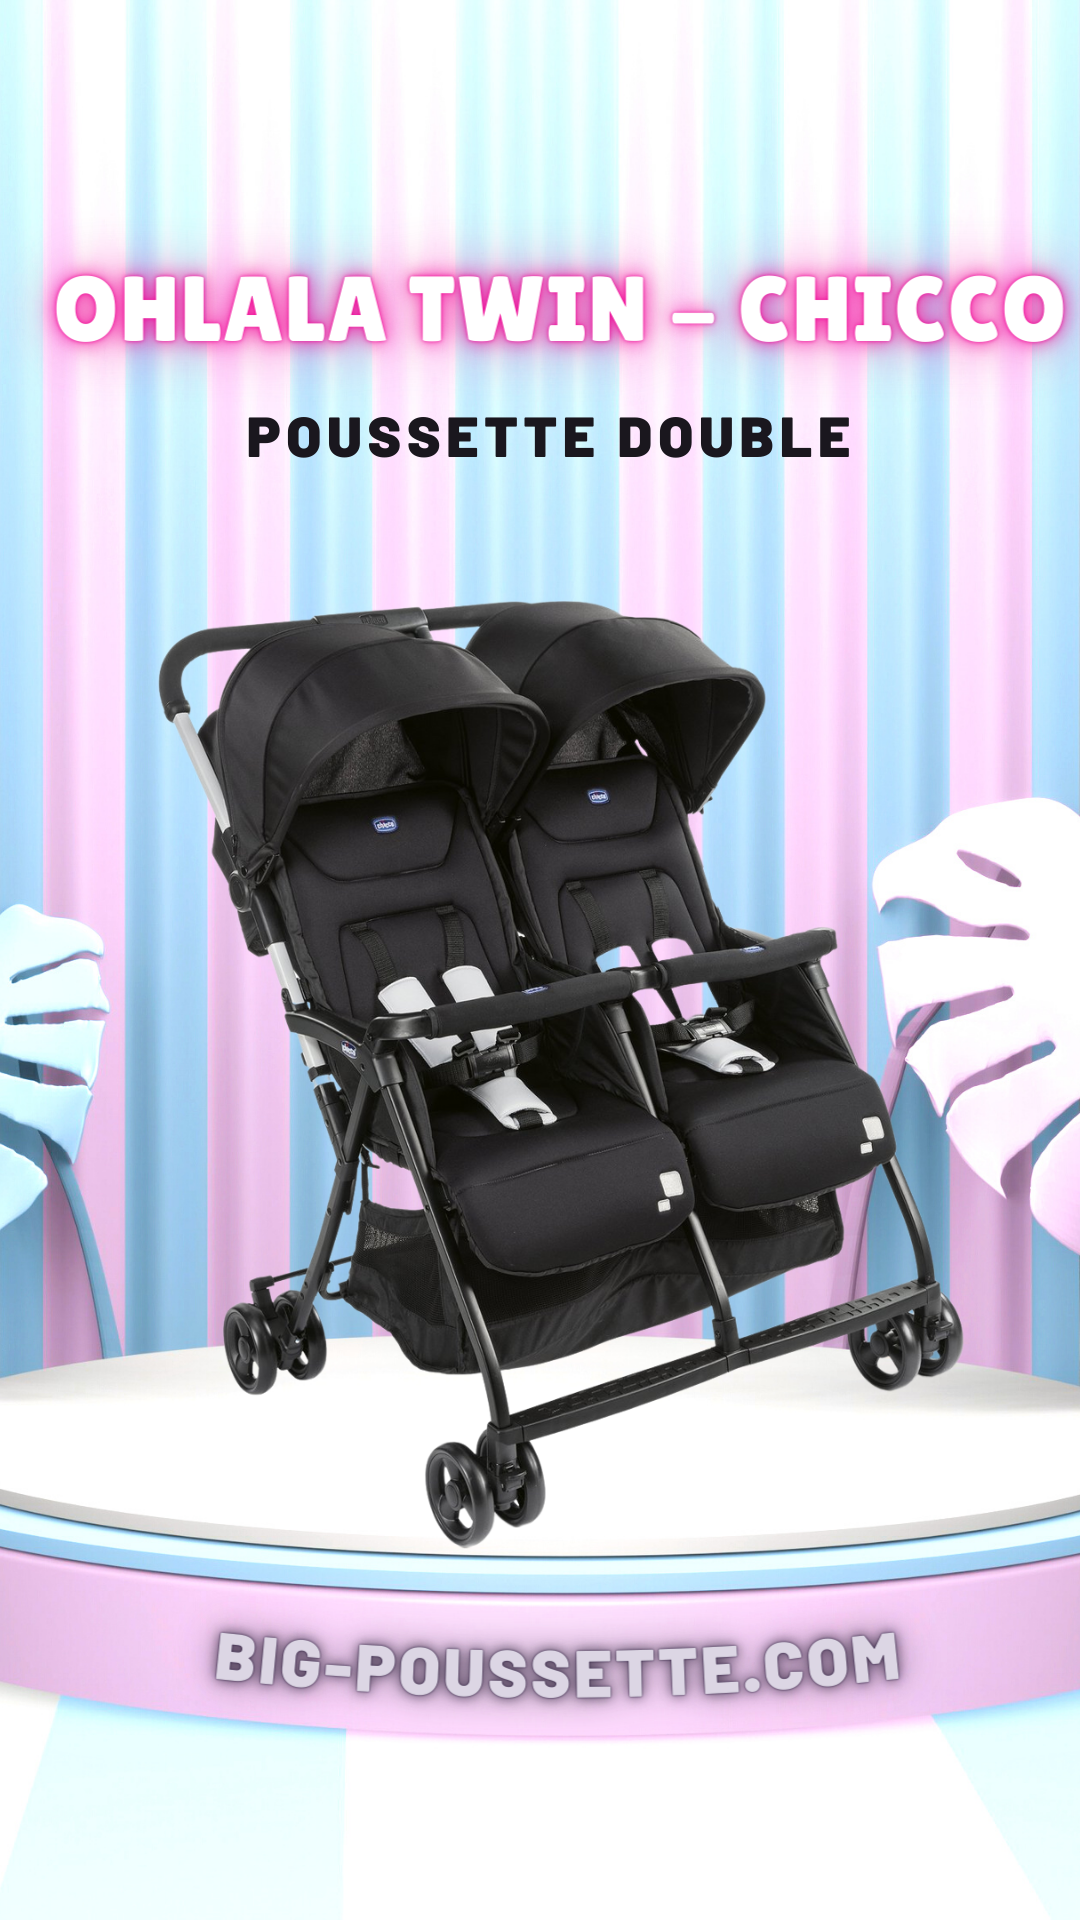 Poussette Double Together, marque Chicco, conçue pour les jumeaux